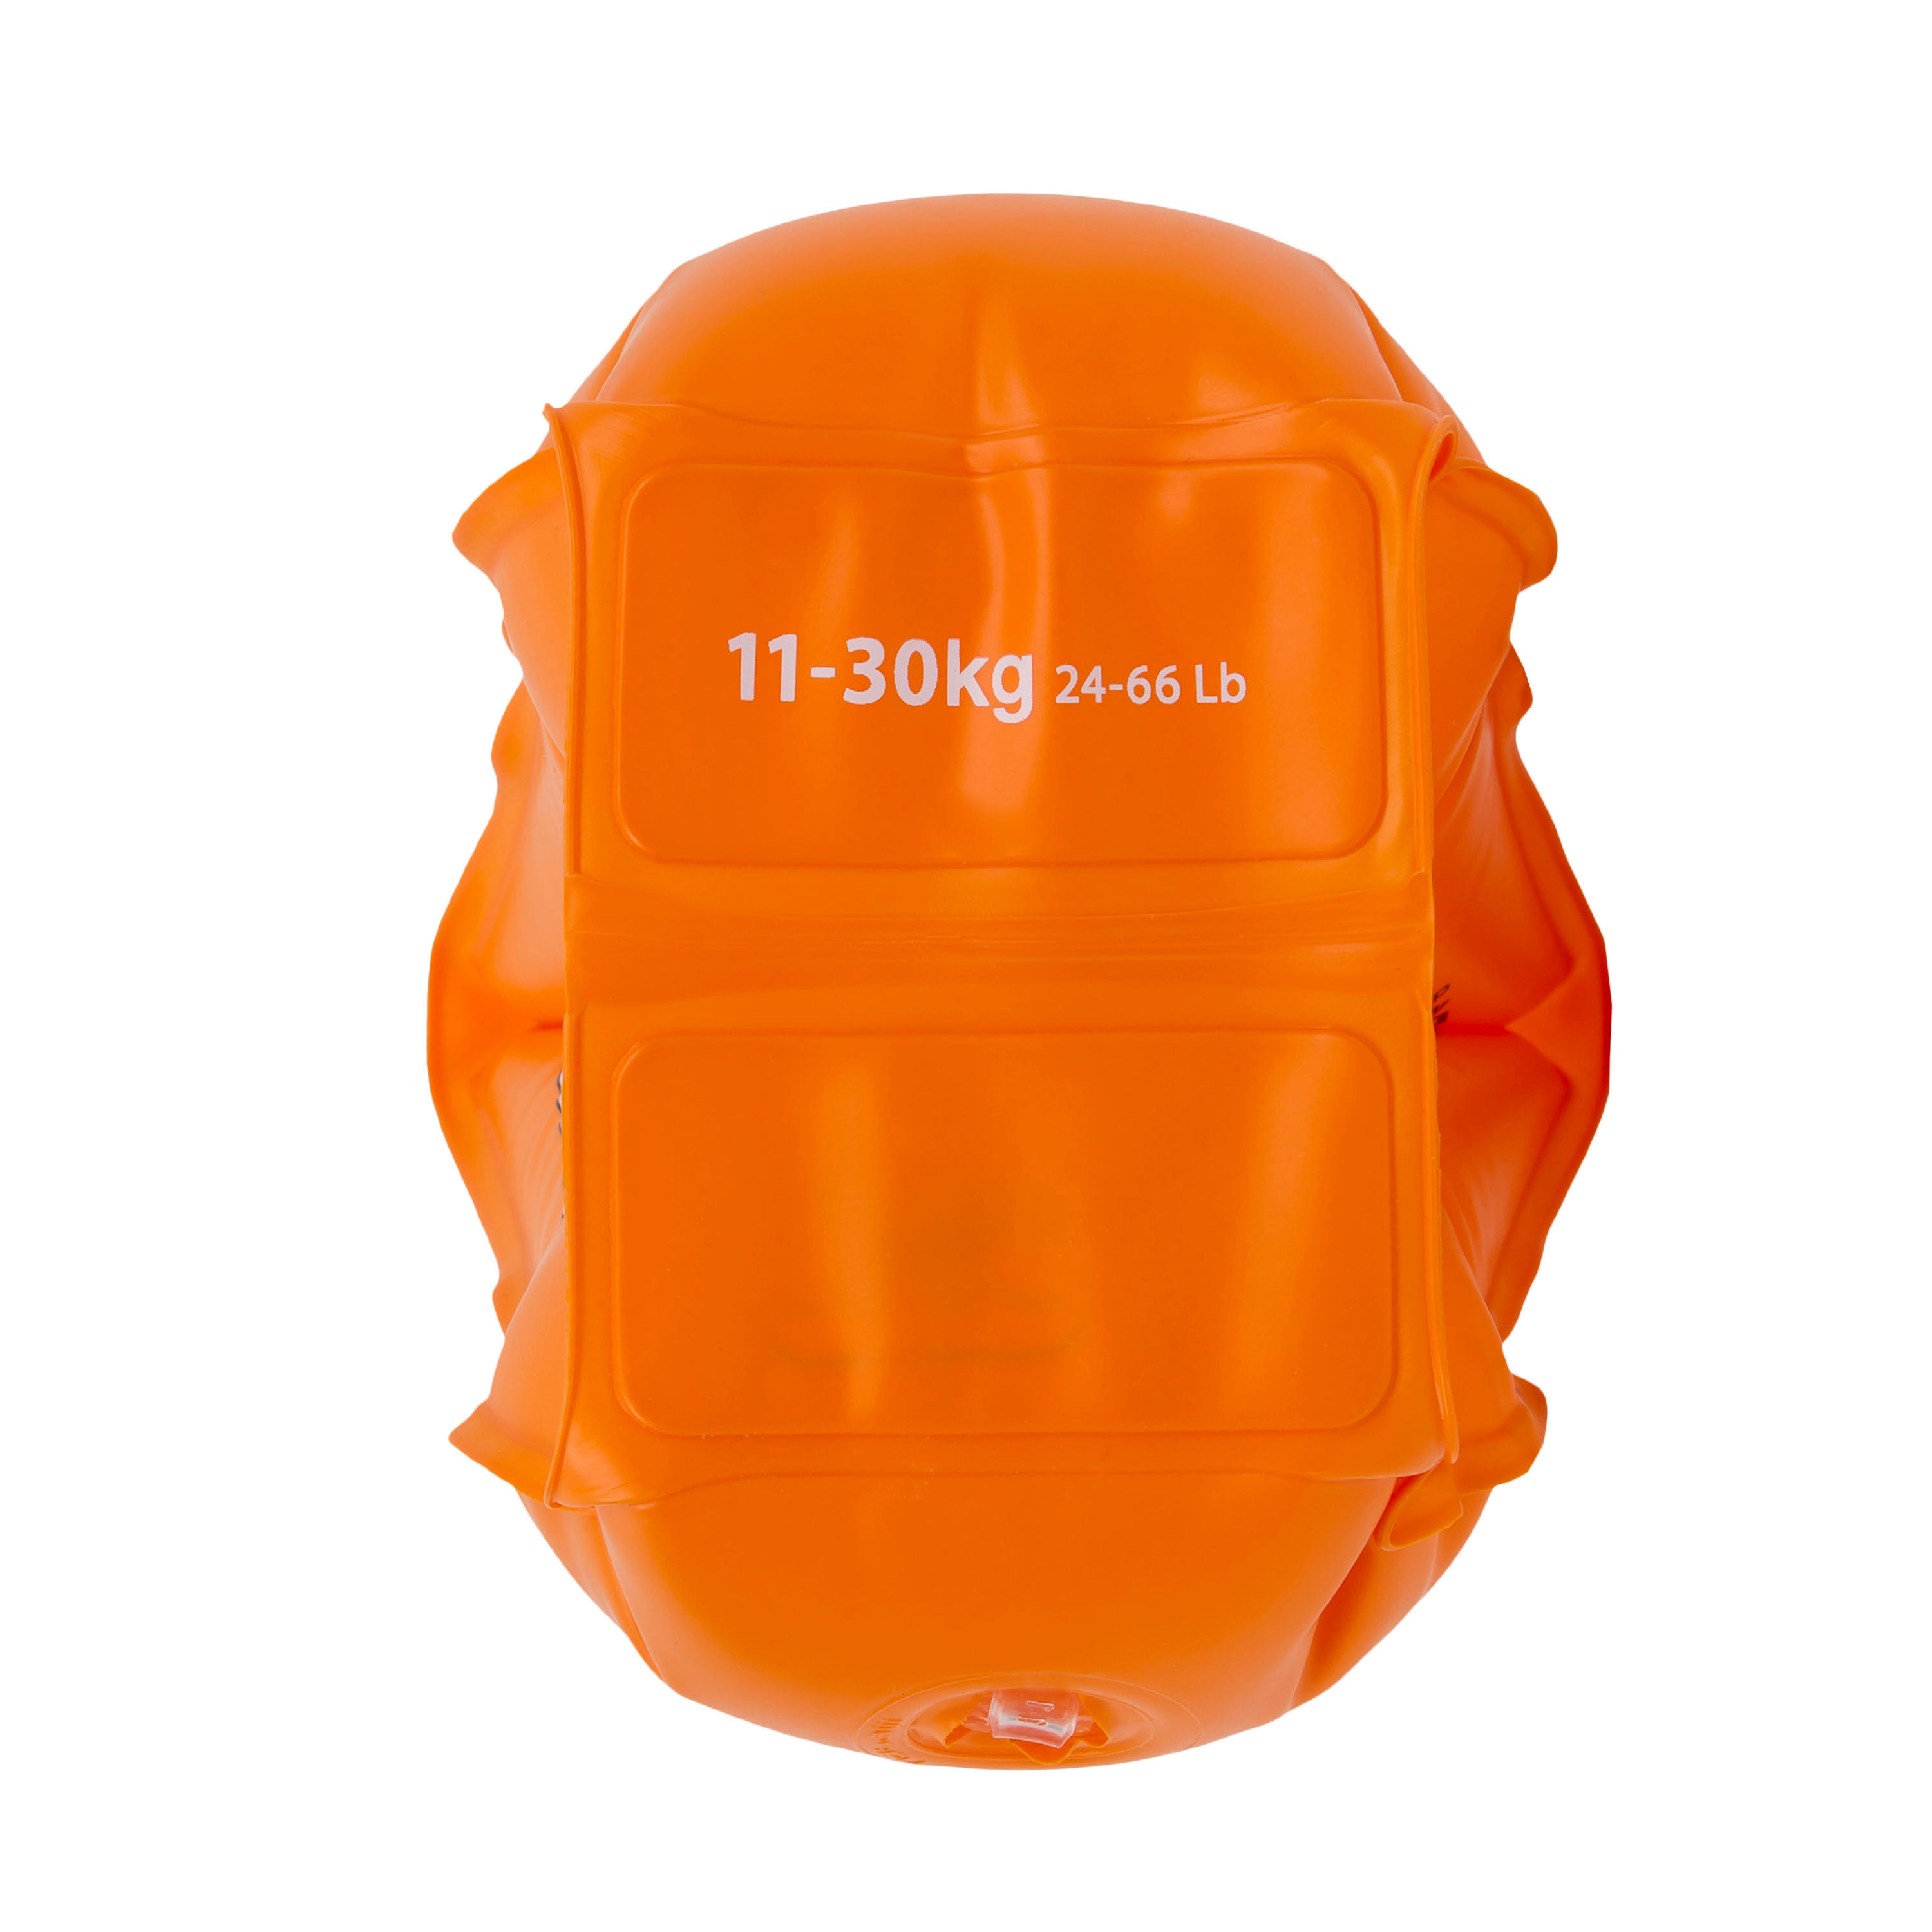 Swimming armbands for 11-30 kg kids - orange 5/6